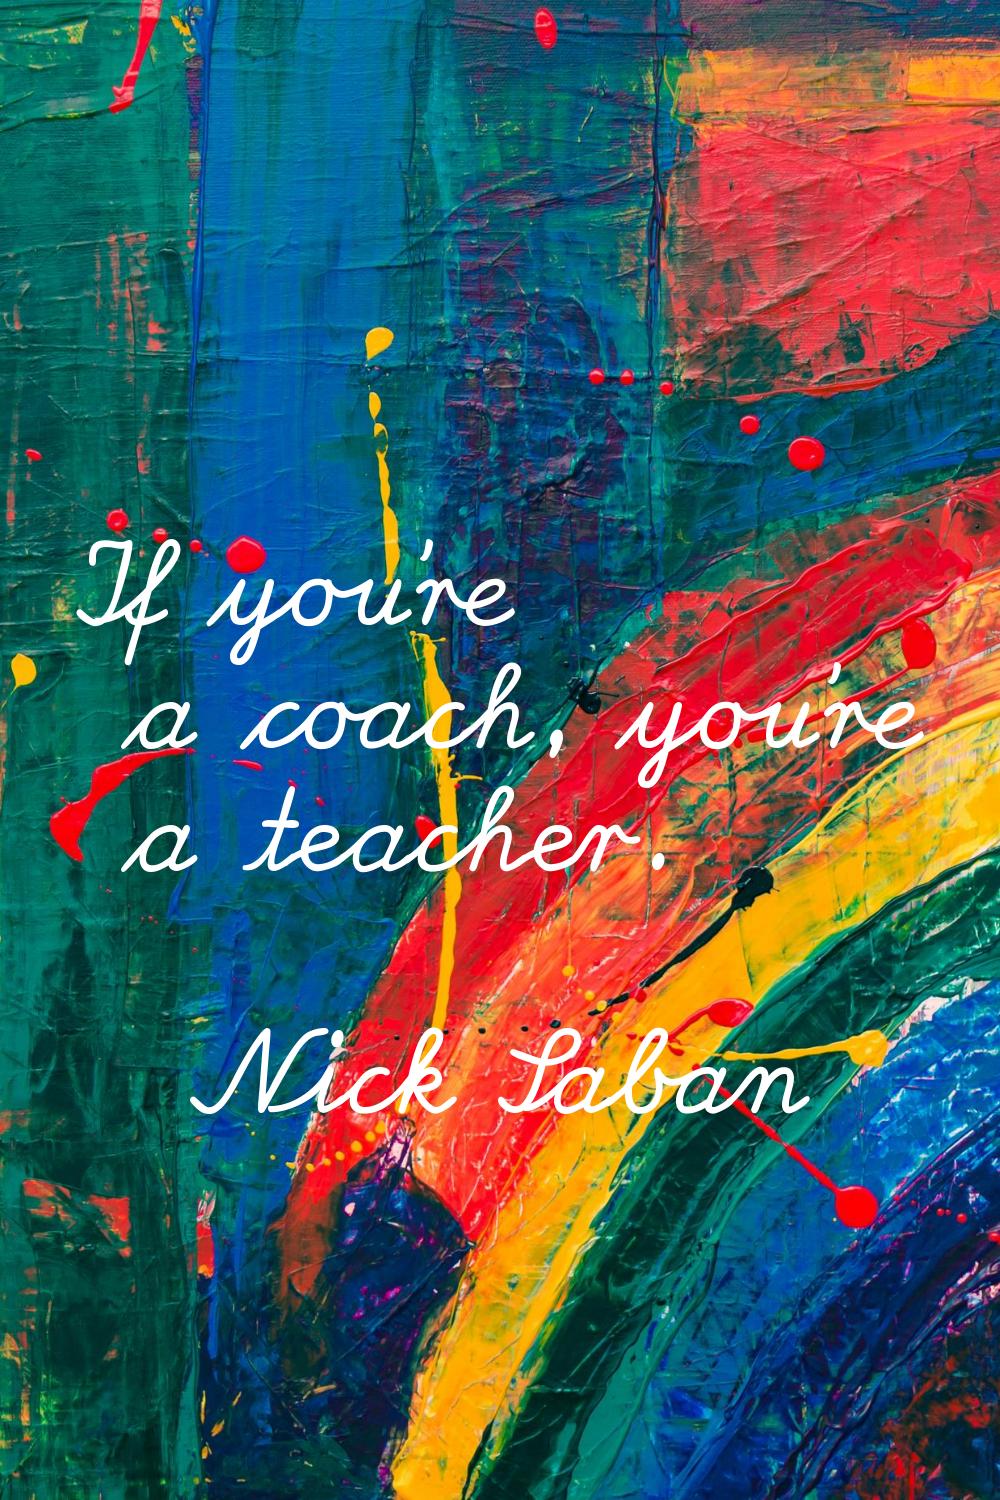 If you're a coach, you're a teacher.